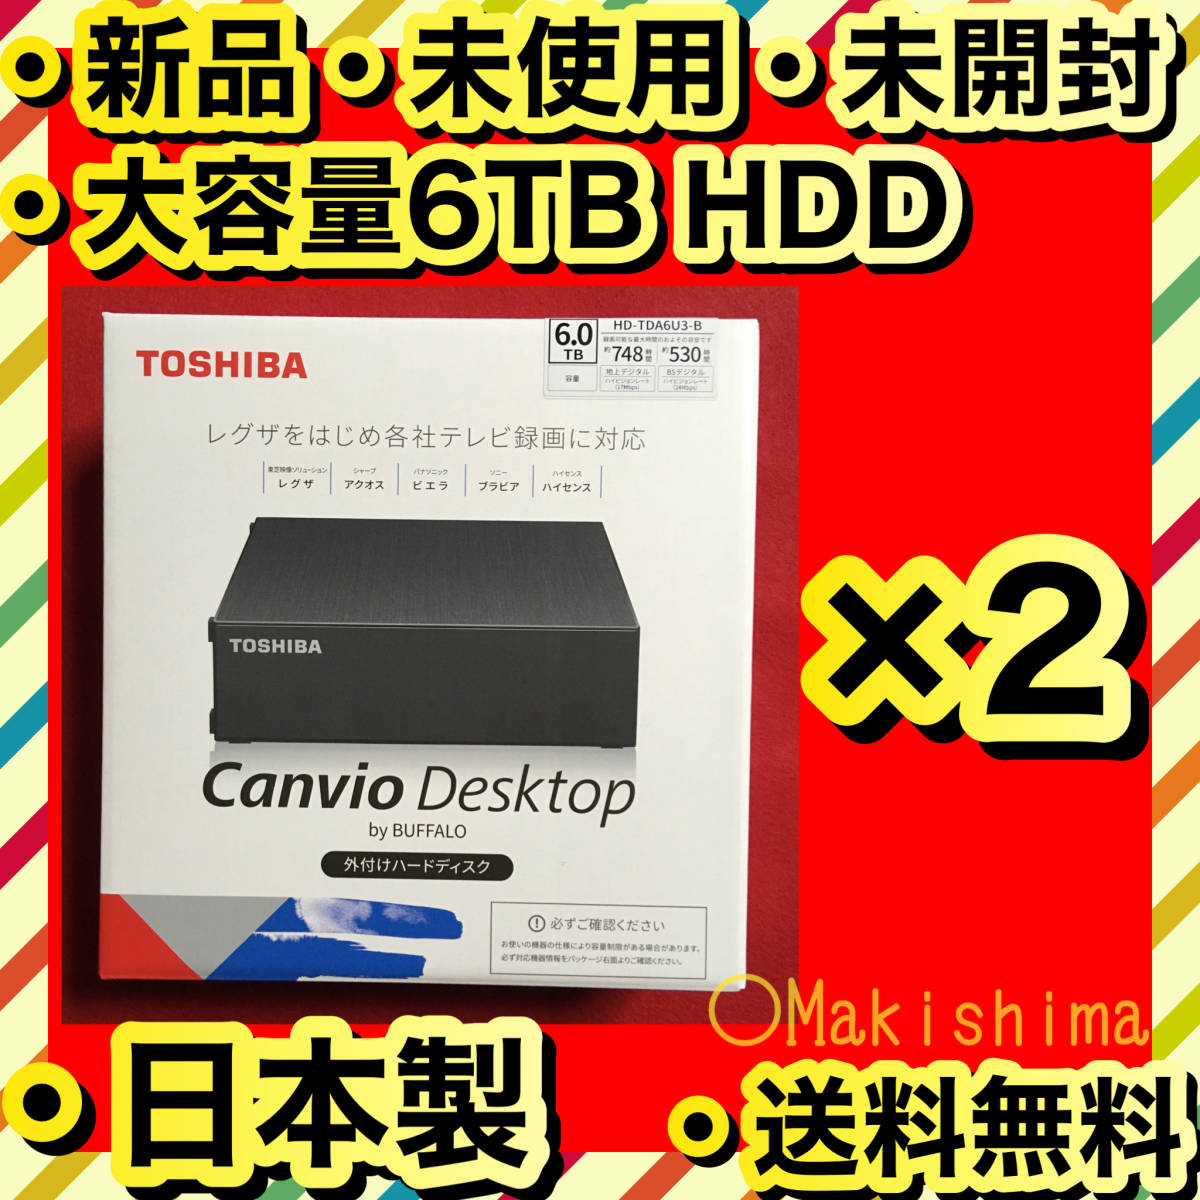 バッファロー CANVIO DESKTOP HD-TDA6U3-B [ブラック] オークション 